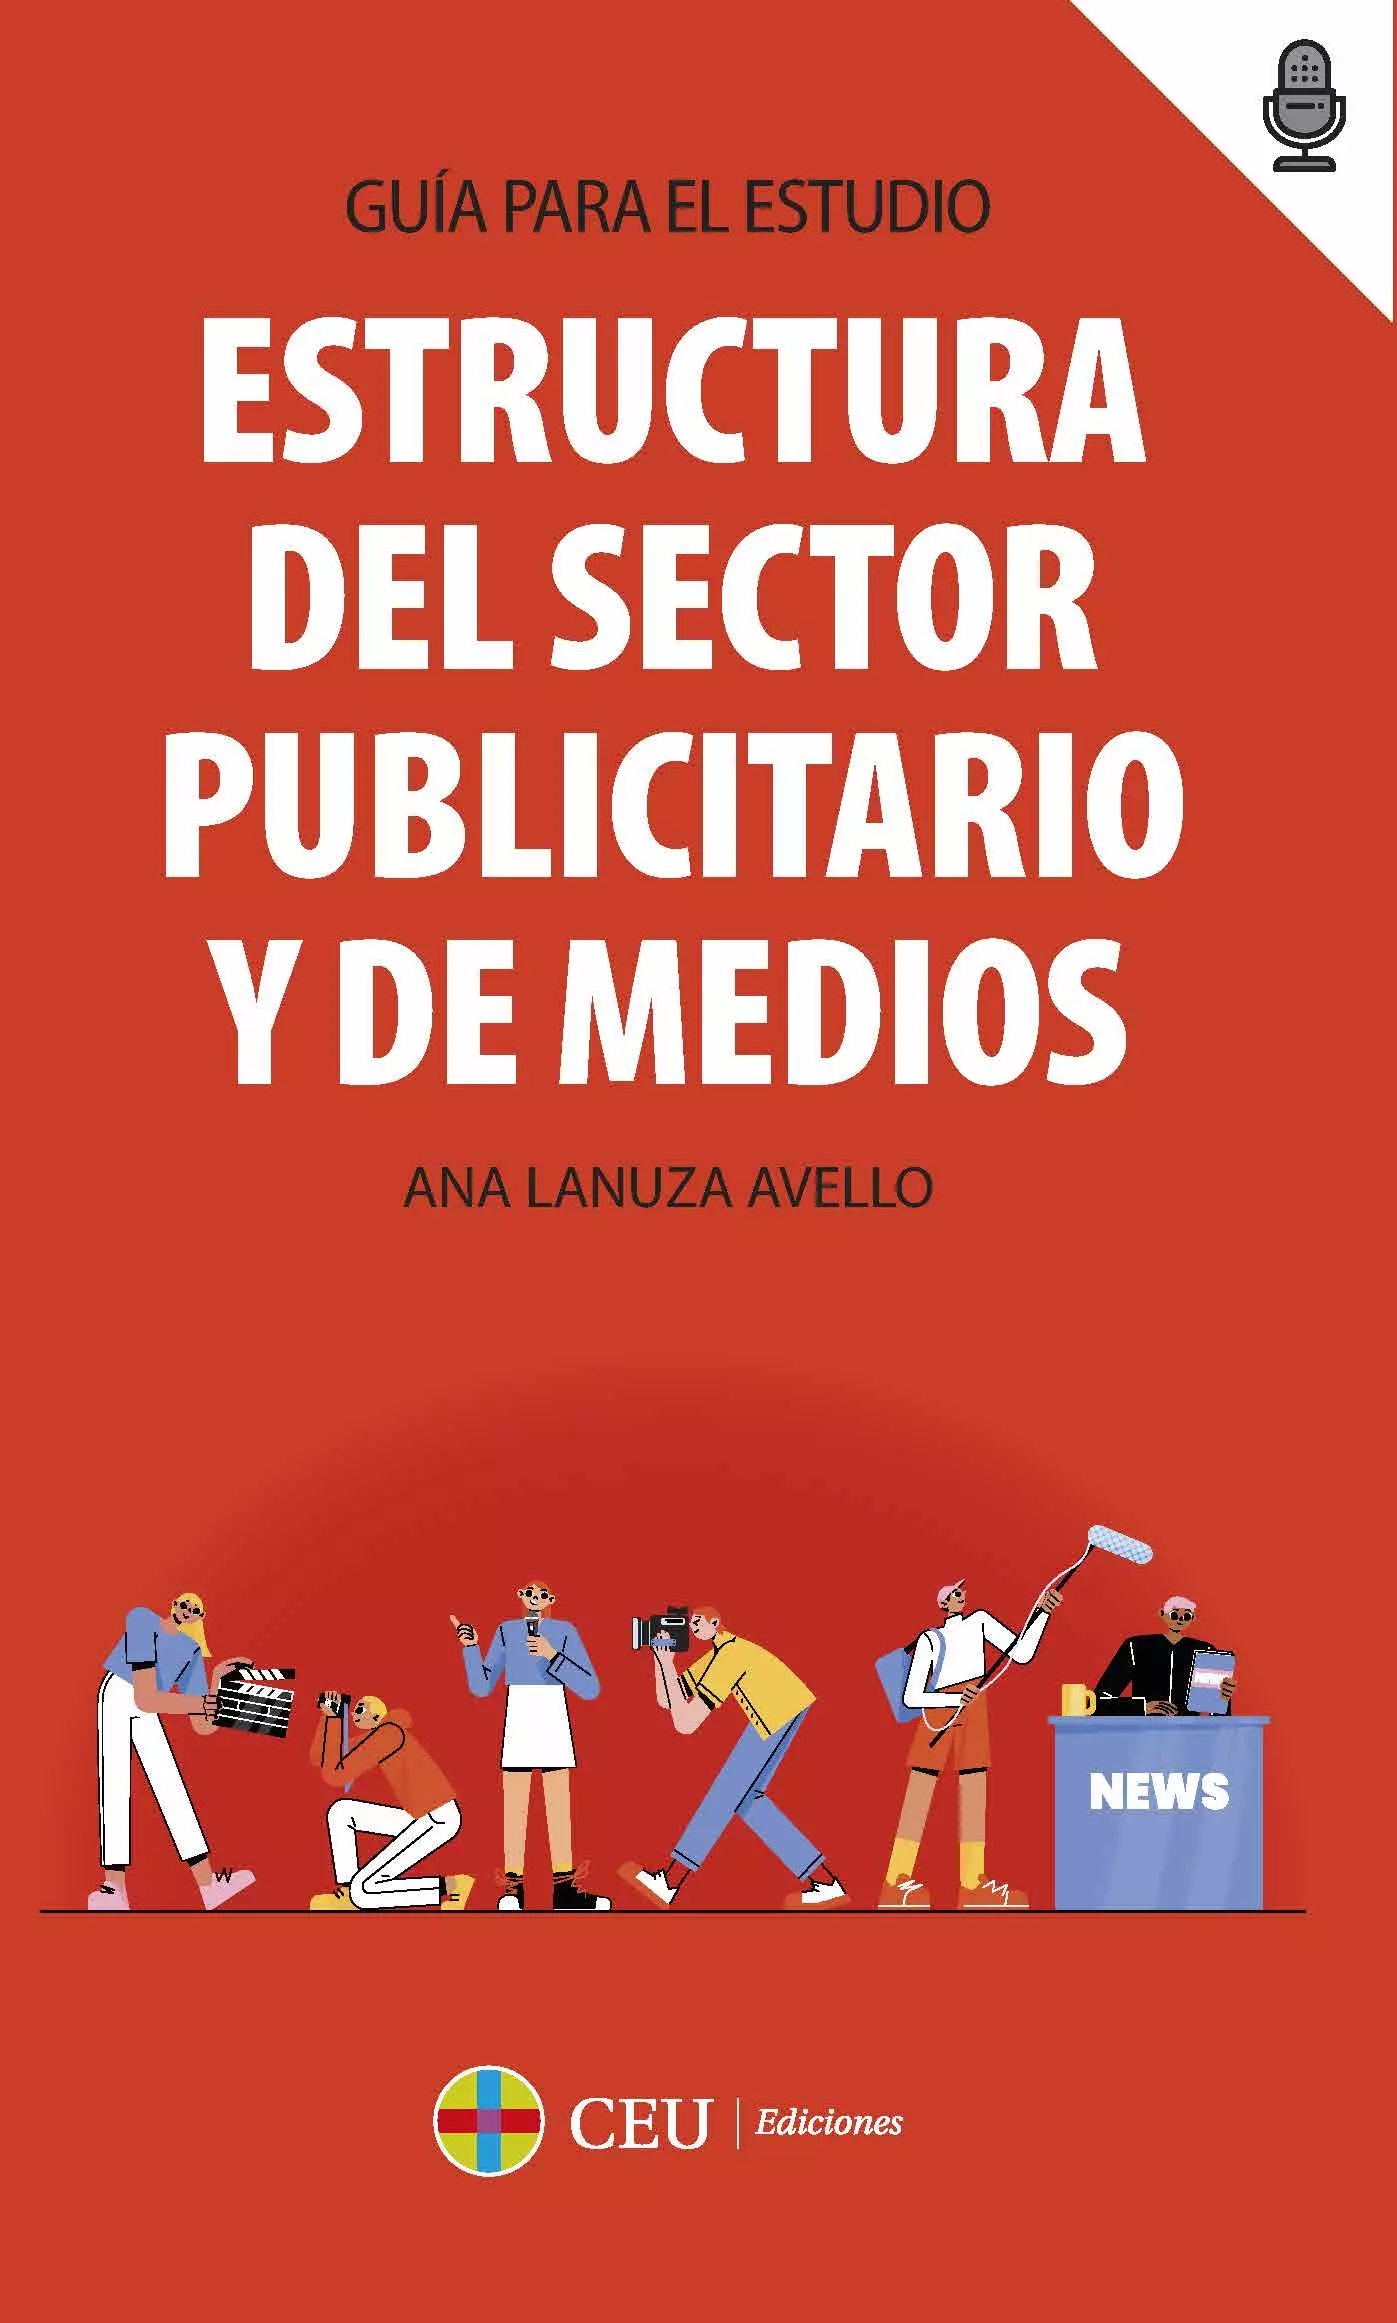 Imagen de portada del libro Estructura del sector publicitario y de medios